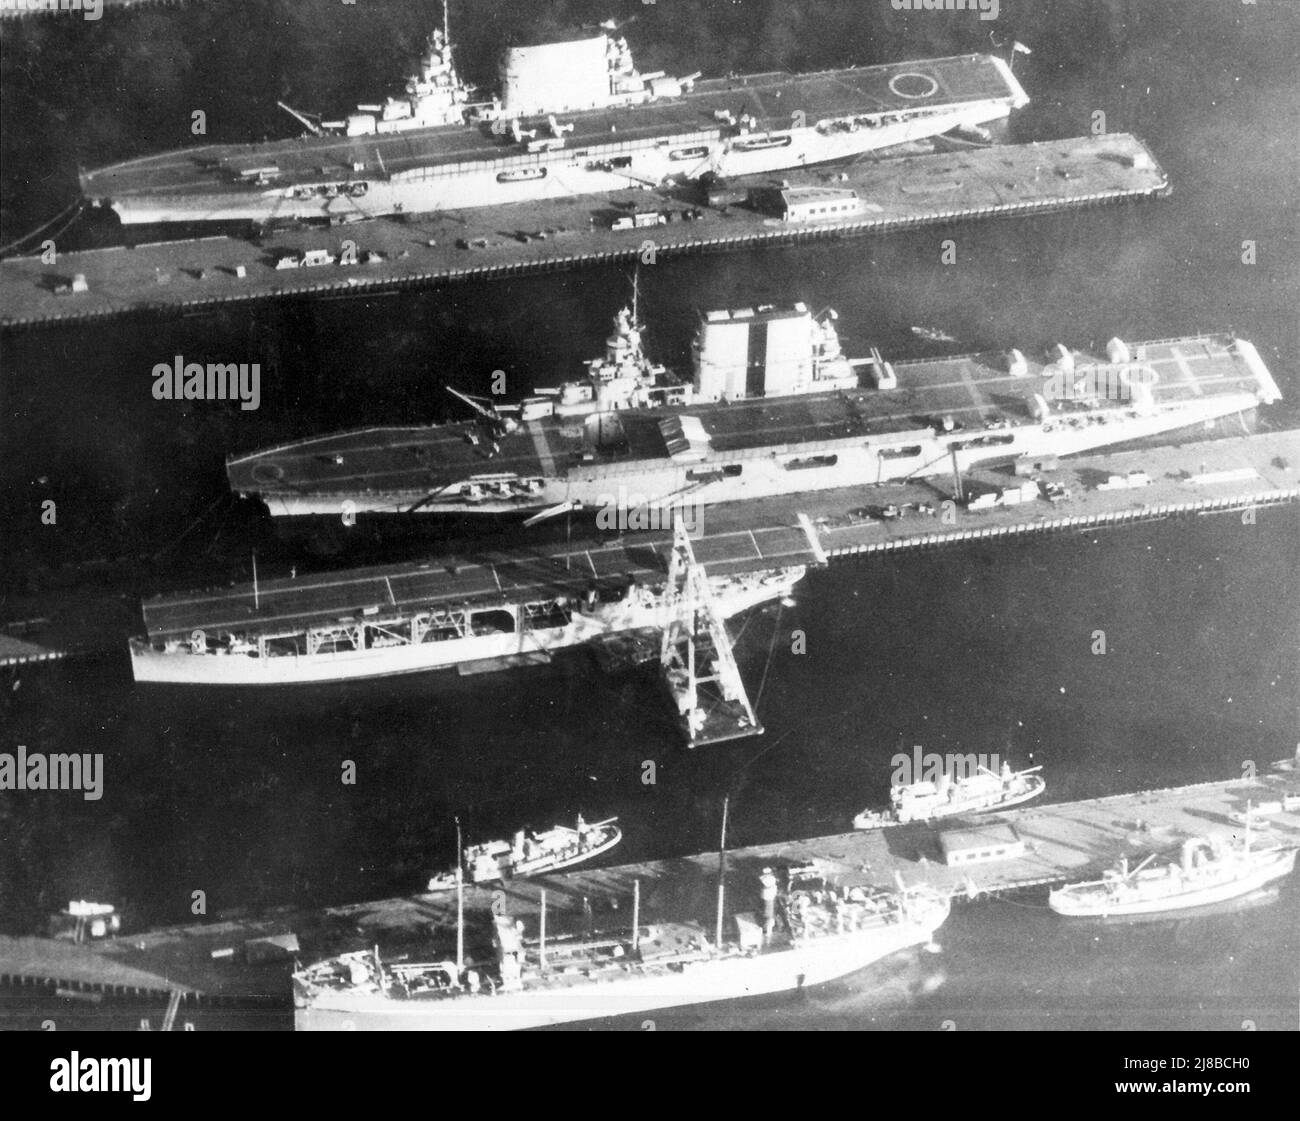 Les porte-avions américains USS Lexington (CV-2) (haut), USS Saratoga (CV-3) (milieu) et USS Langley (CV-1) (bas) amarrés au chantier naval Puget Sound de Bremerton, Washington (États-Unis), en 1929. Banque D'Images